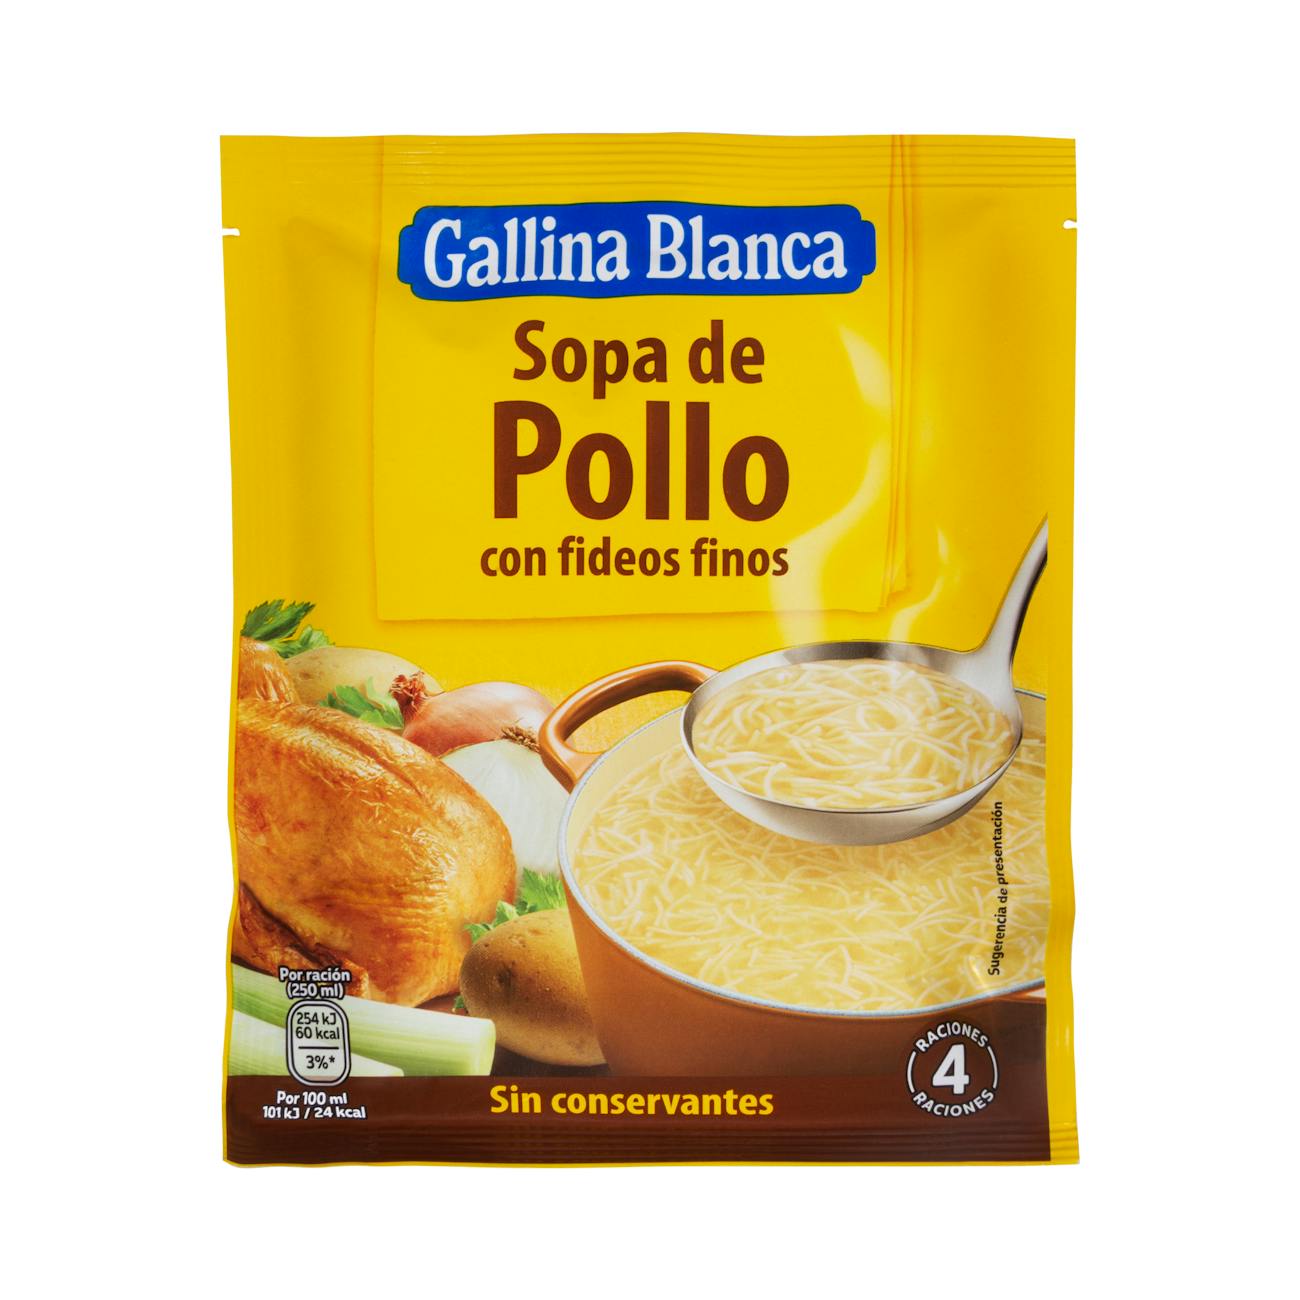 Sopa de pollo Gallina Blanca con fideos finos